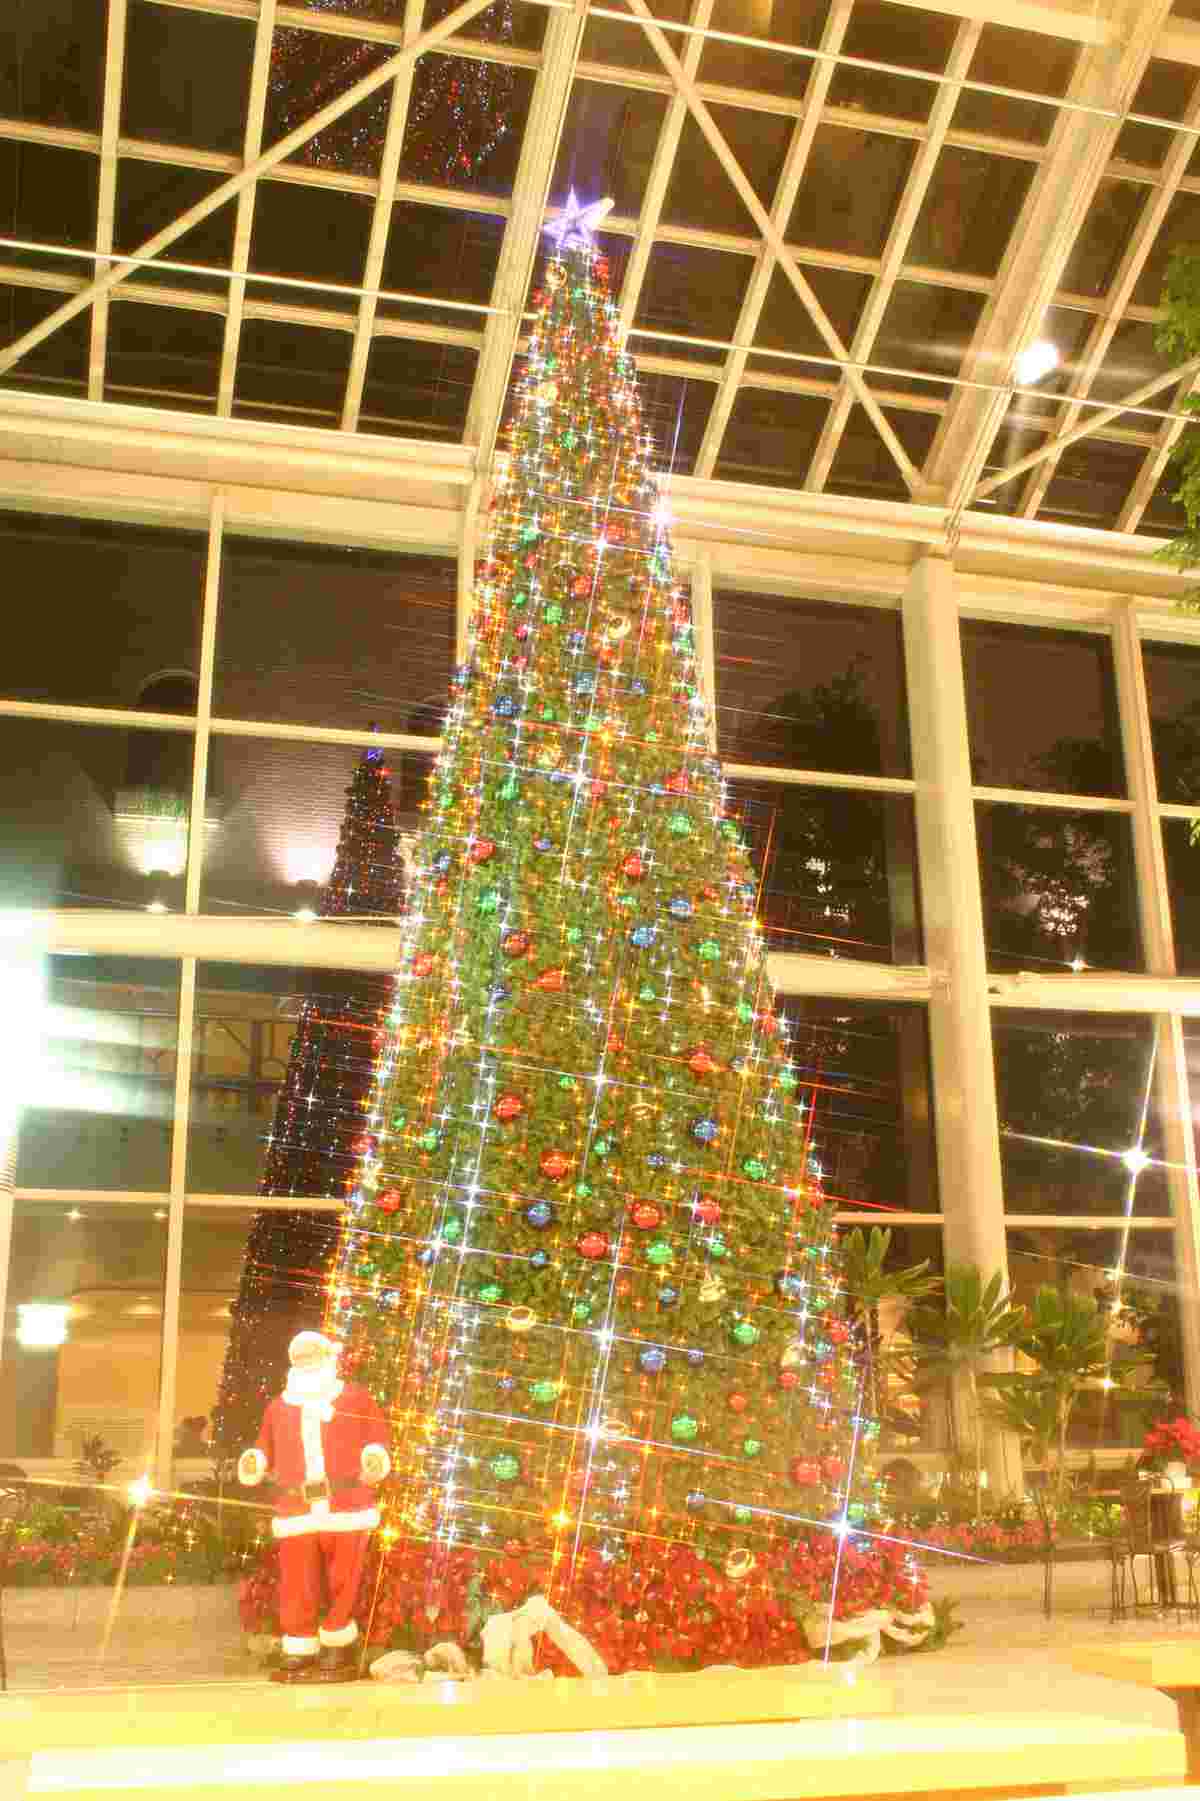 『淡路ハイウェイオアシス』に島内最大級のクリスマスツリーが登場　淡路市 [画像]